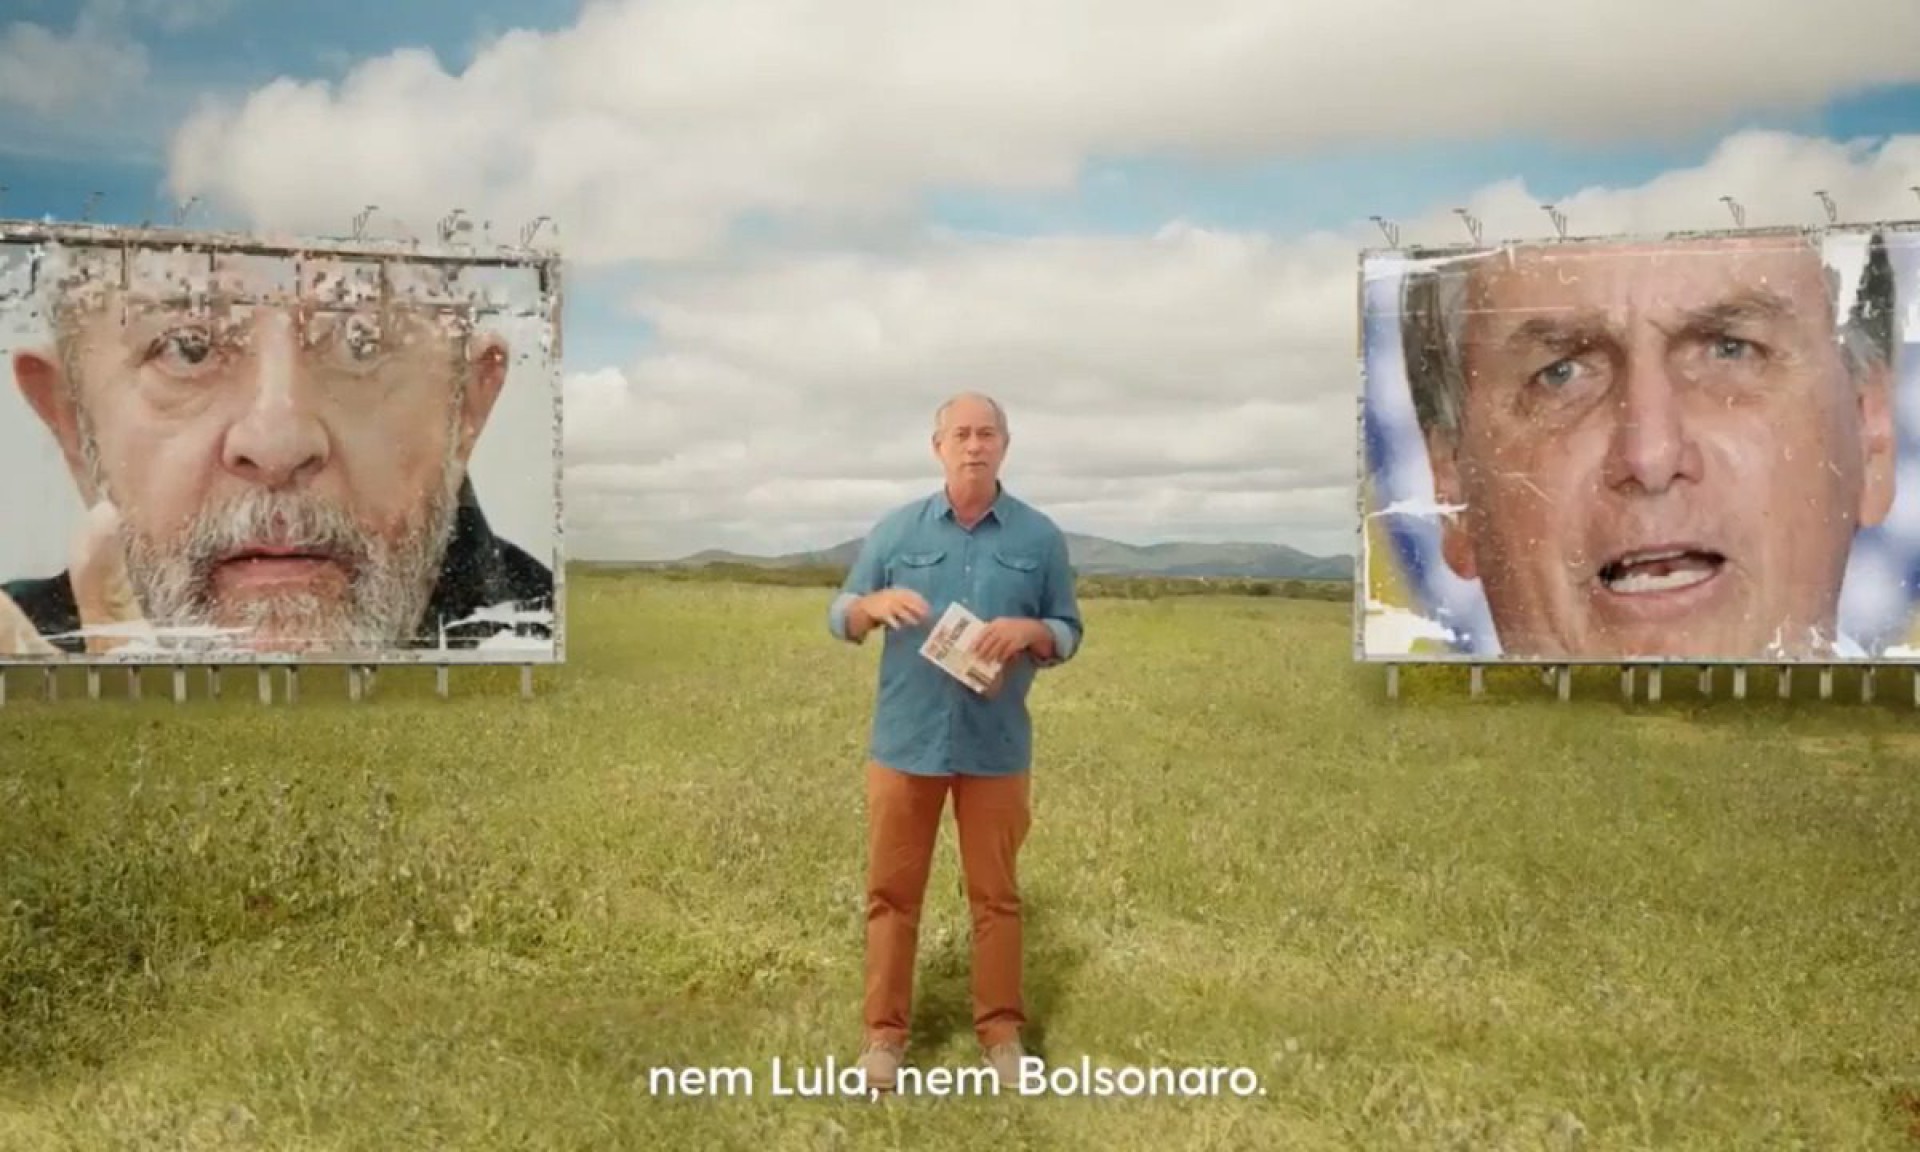 NAS REDES sociais, Ciro diz ser alternativa diante de Lula e Bolsonaro em 2022 (Foto: Reprodução)